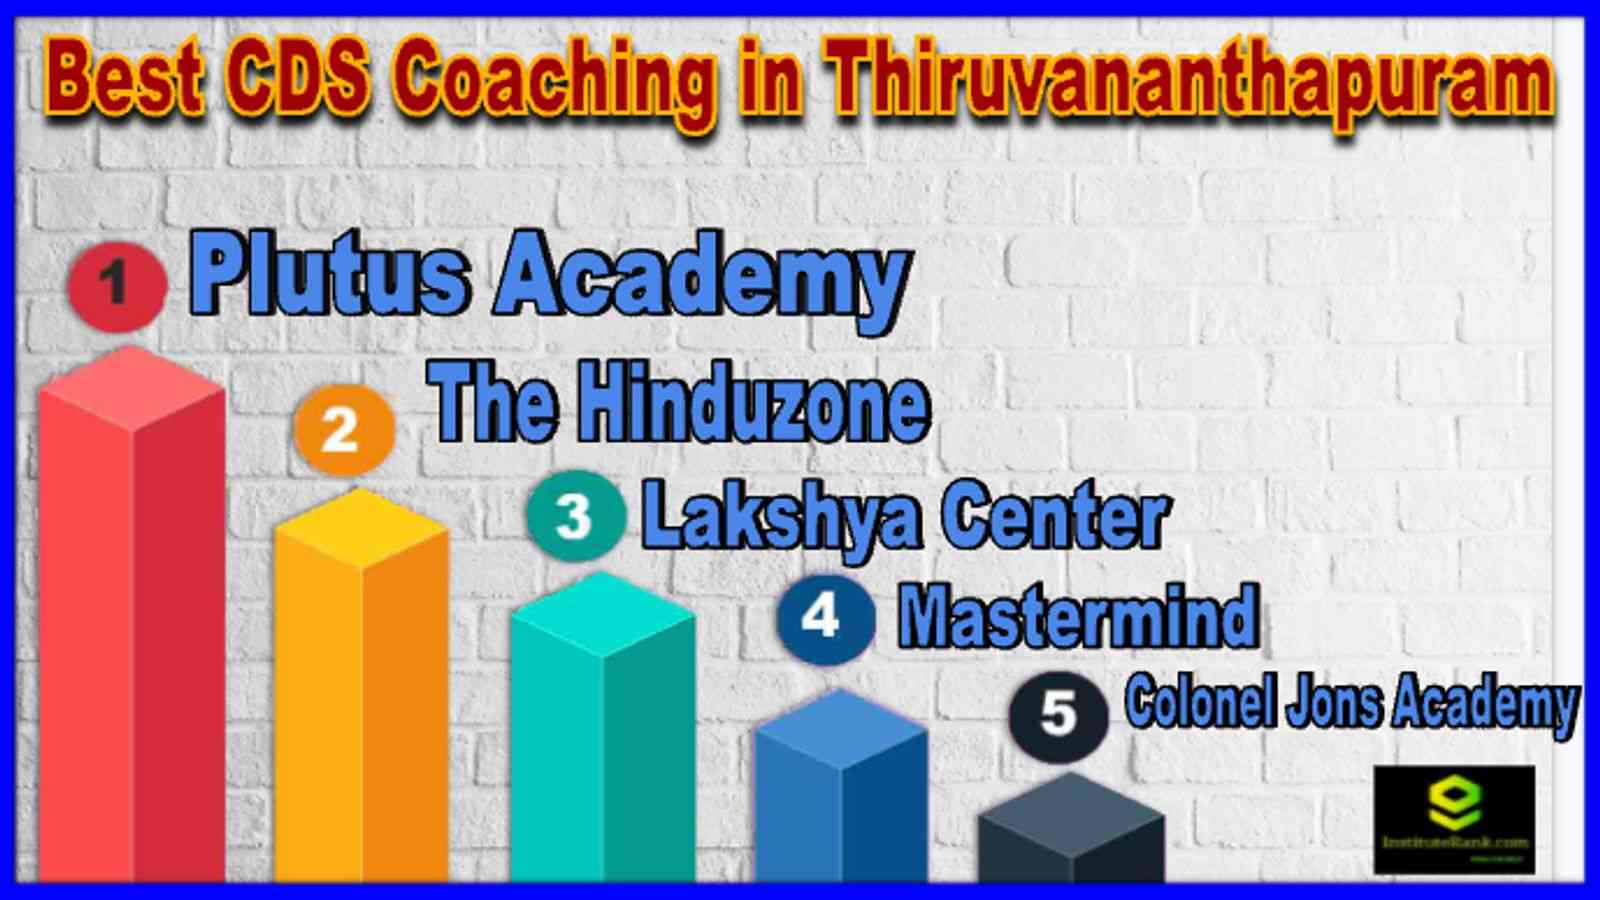 Best CDS Coaching in Thiruvananthapuram